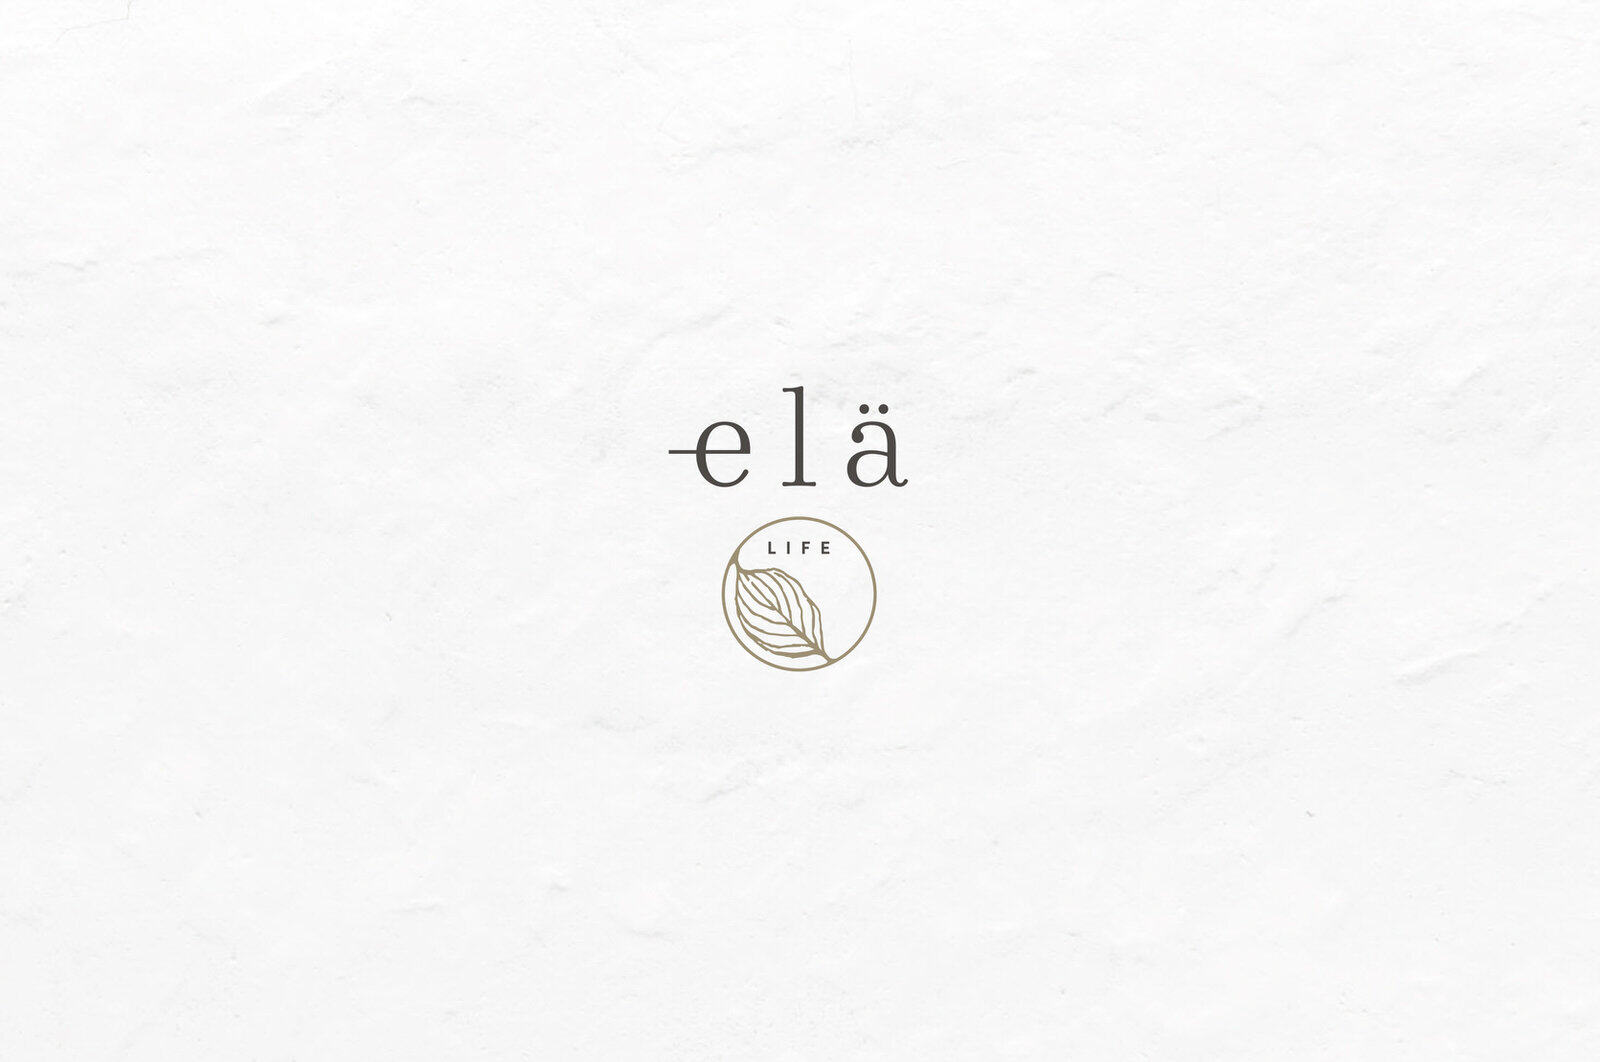 ela-life-brand-identity-NEW-1.jpg